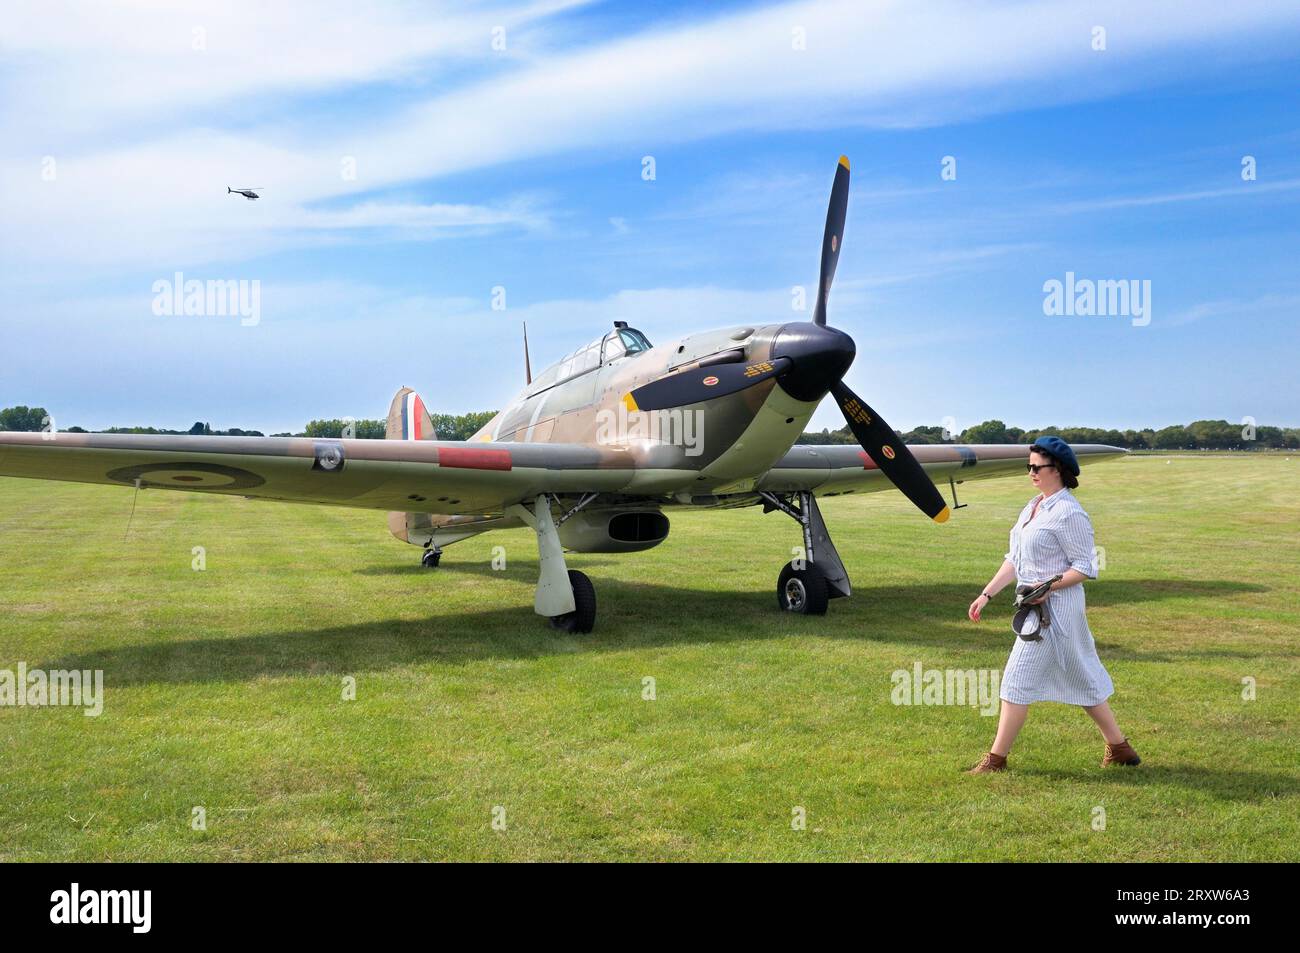 Una donna in abbigliamento d'epoca che cammina davanti a un aereo da caccia Hawker Hurricane Mk.1 P2921 GZ-L parcheggiato sull'erba al Goodwood Revival, West Sussex, Inghilterra, Regno Unito Foto Stock